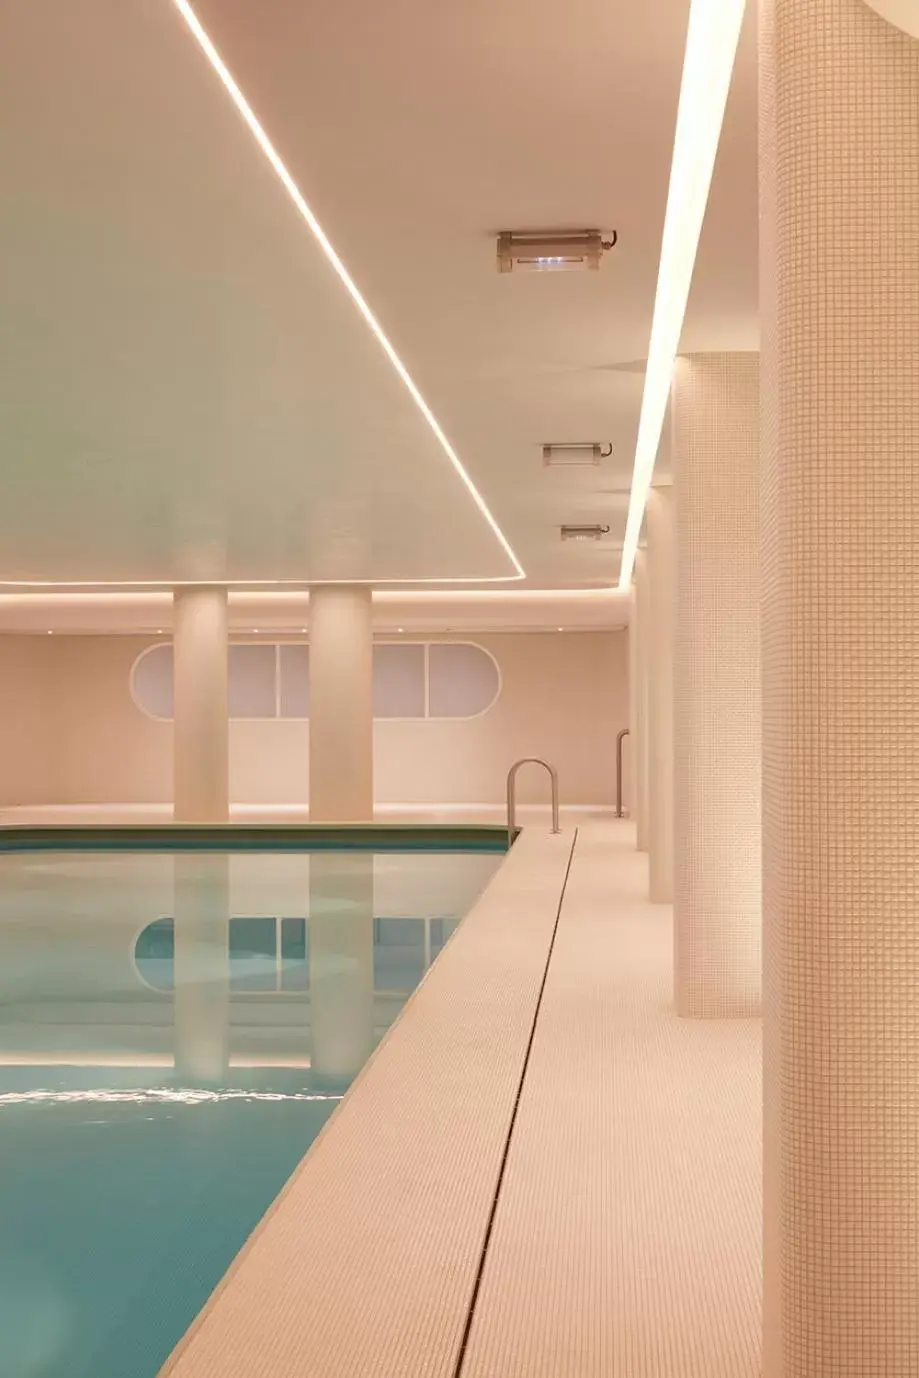 Pool view, Swimming Pool in SO Paris Hotel